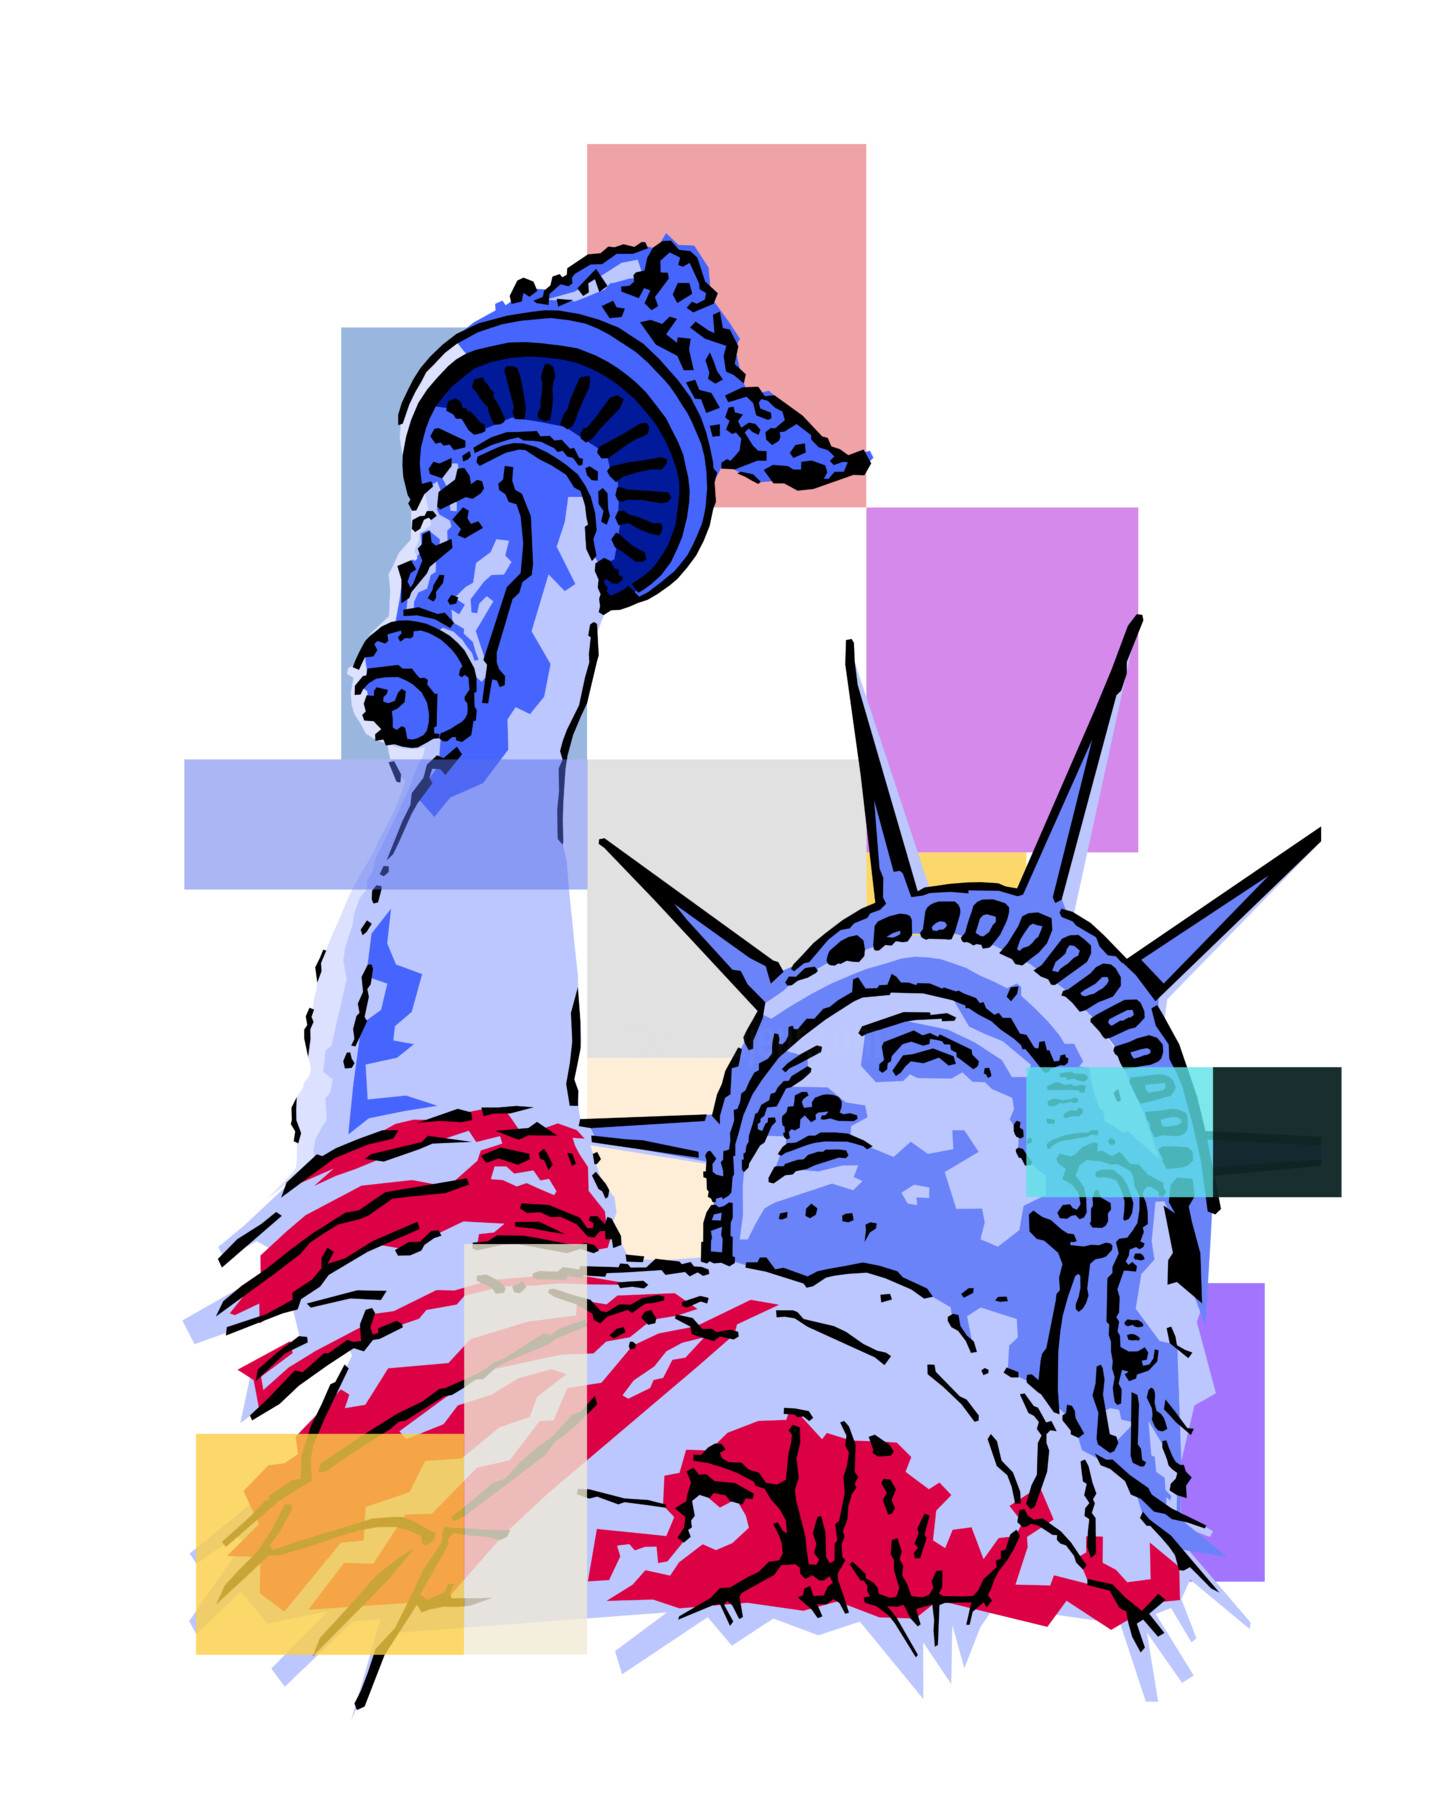 Atticus Naschrift Bermad Liberty, Digital Arts by Wannott Bakker | Artmajeur